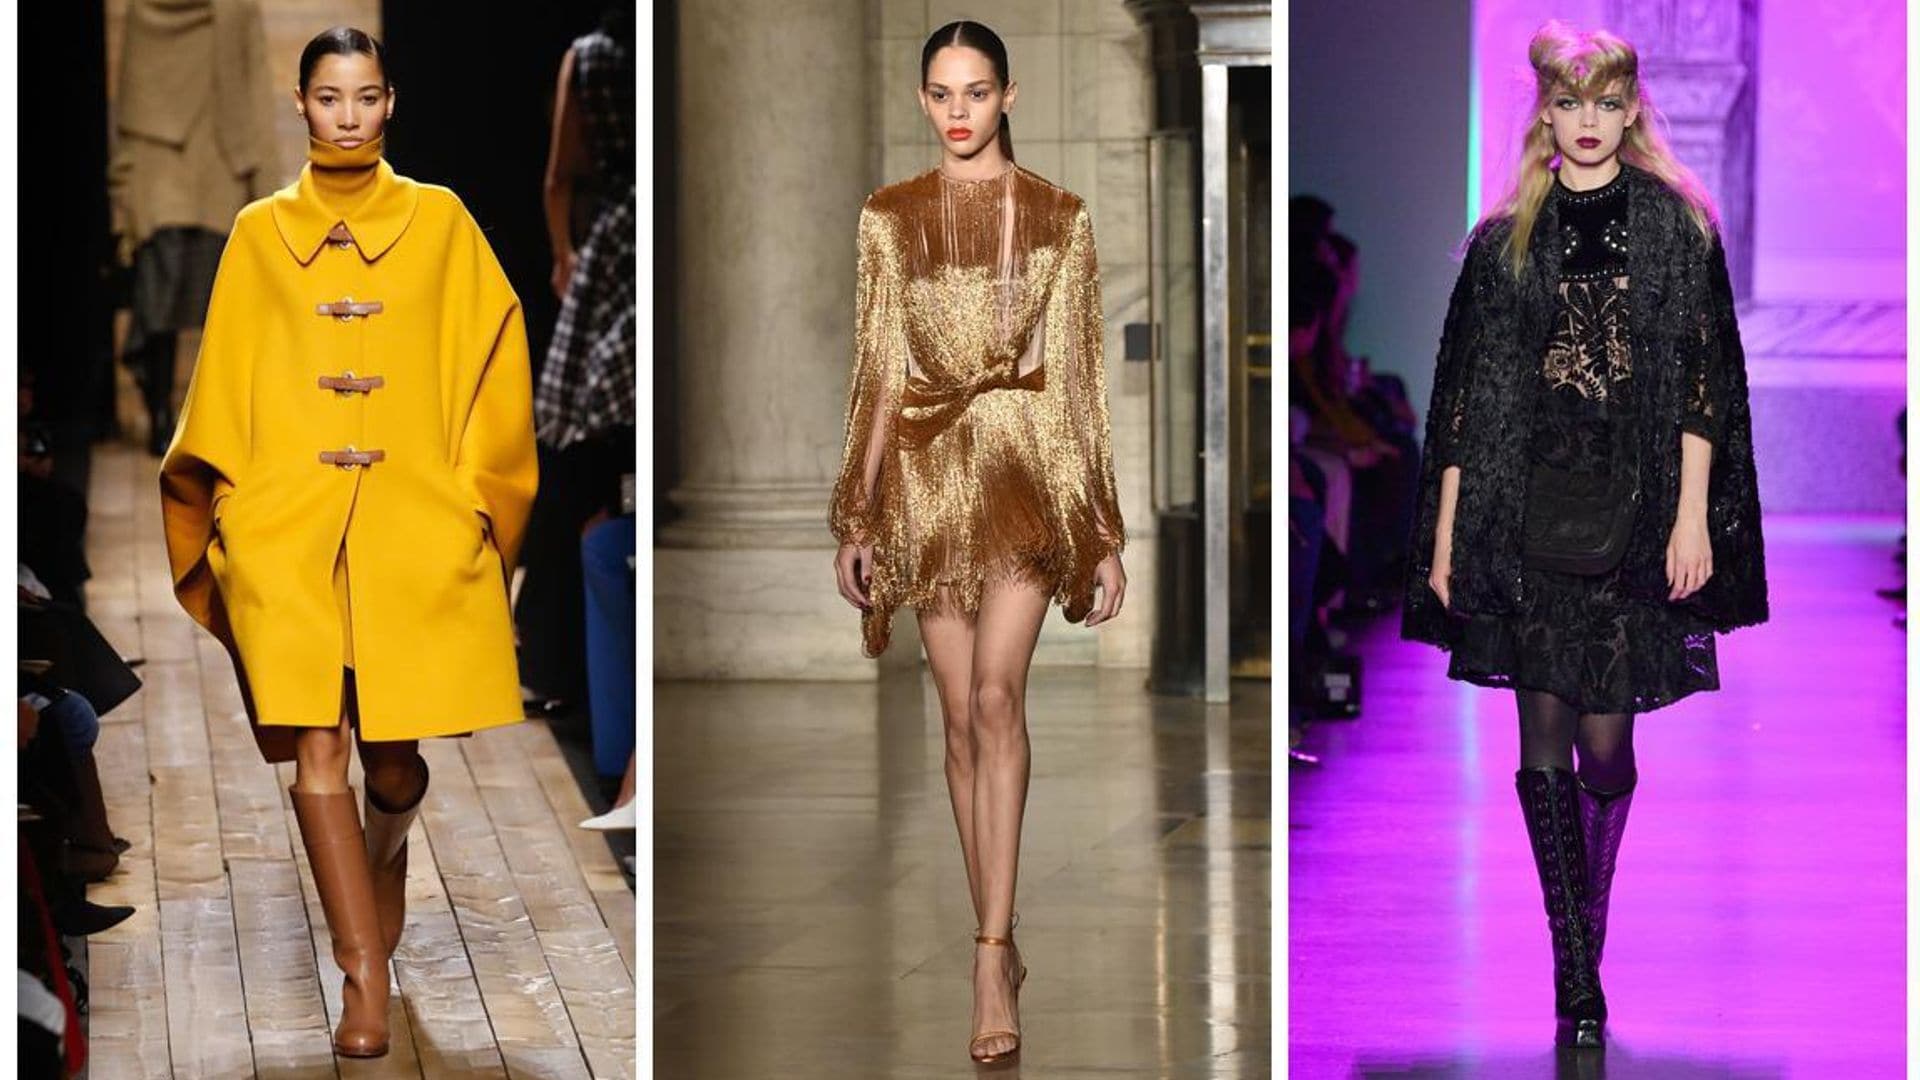 5 stunning Latina models who rocked the runway at New York Fashion Week